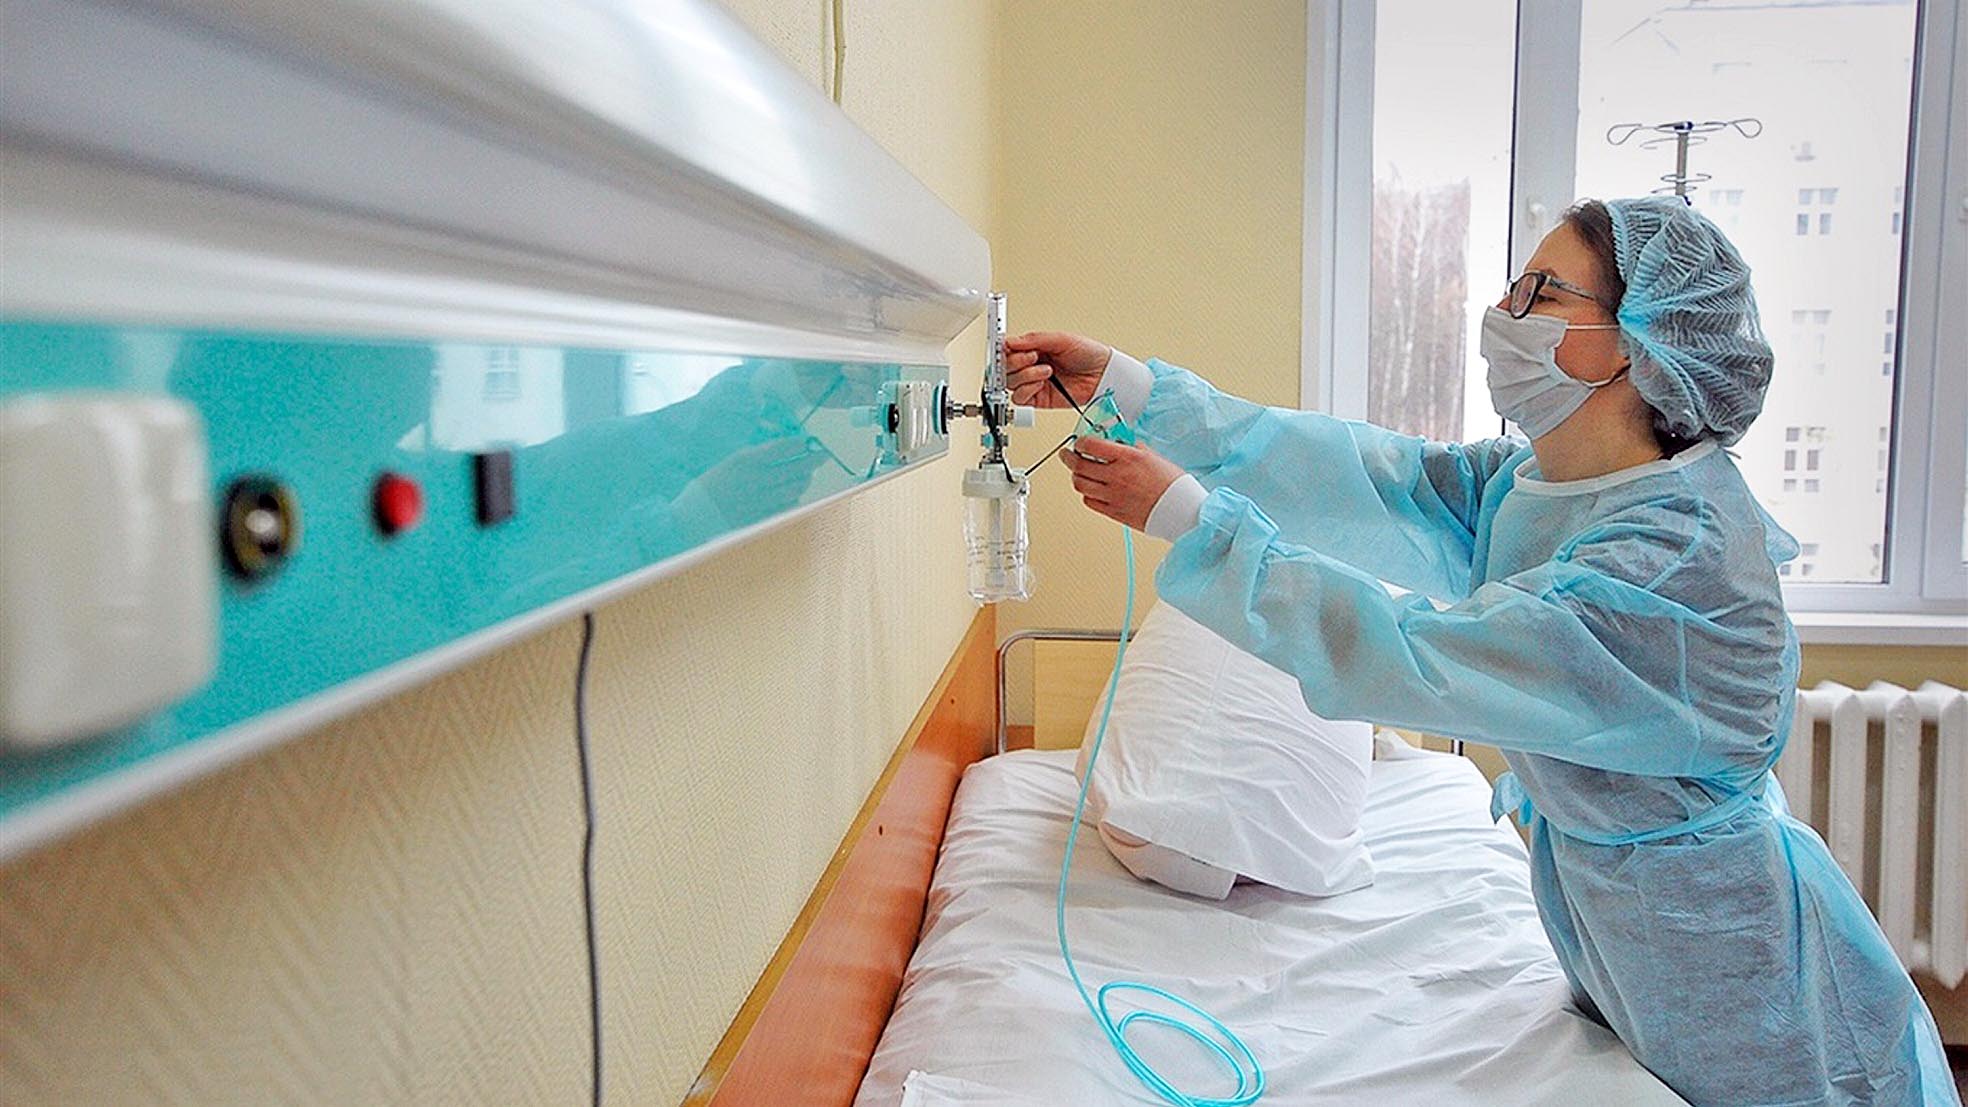 Урядовці спростовують чутки про брак кисню в ковідних лікарнях і запевняють: усі пацієнти, які потребують кисневої терапії, її отримують. Фото з сайту galinfo.com.ua